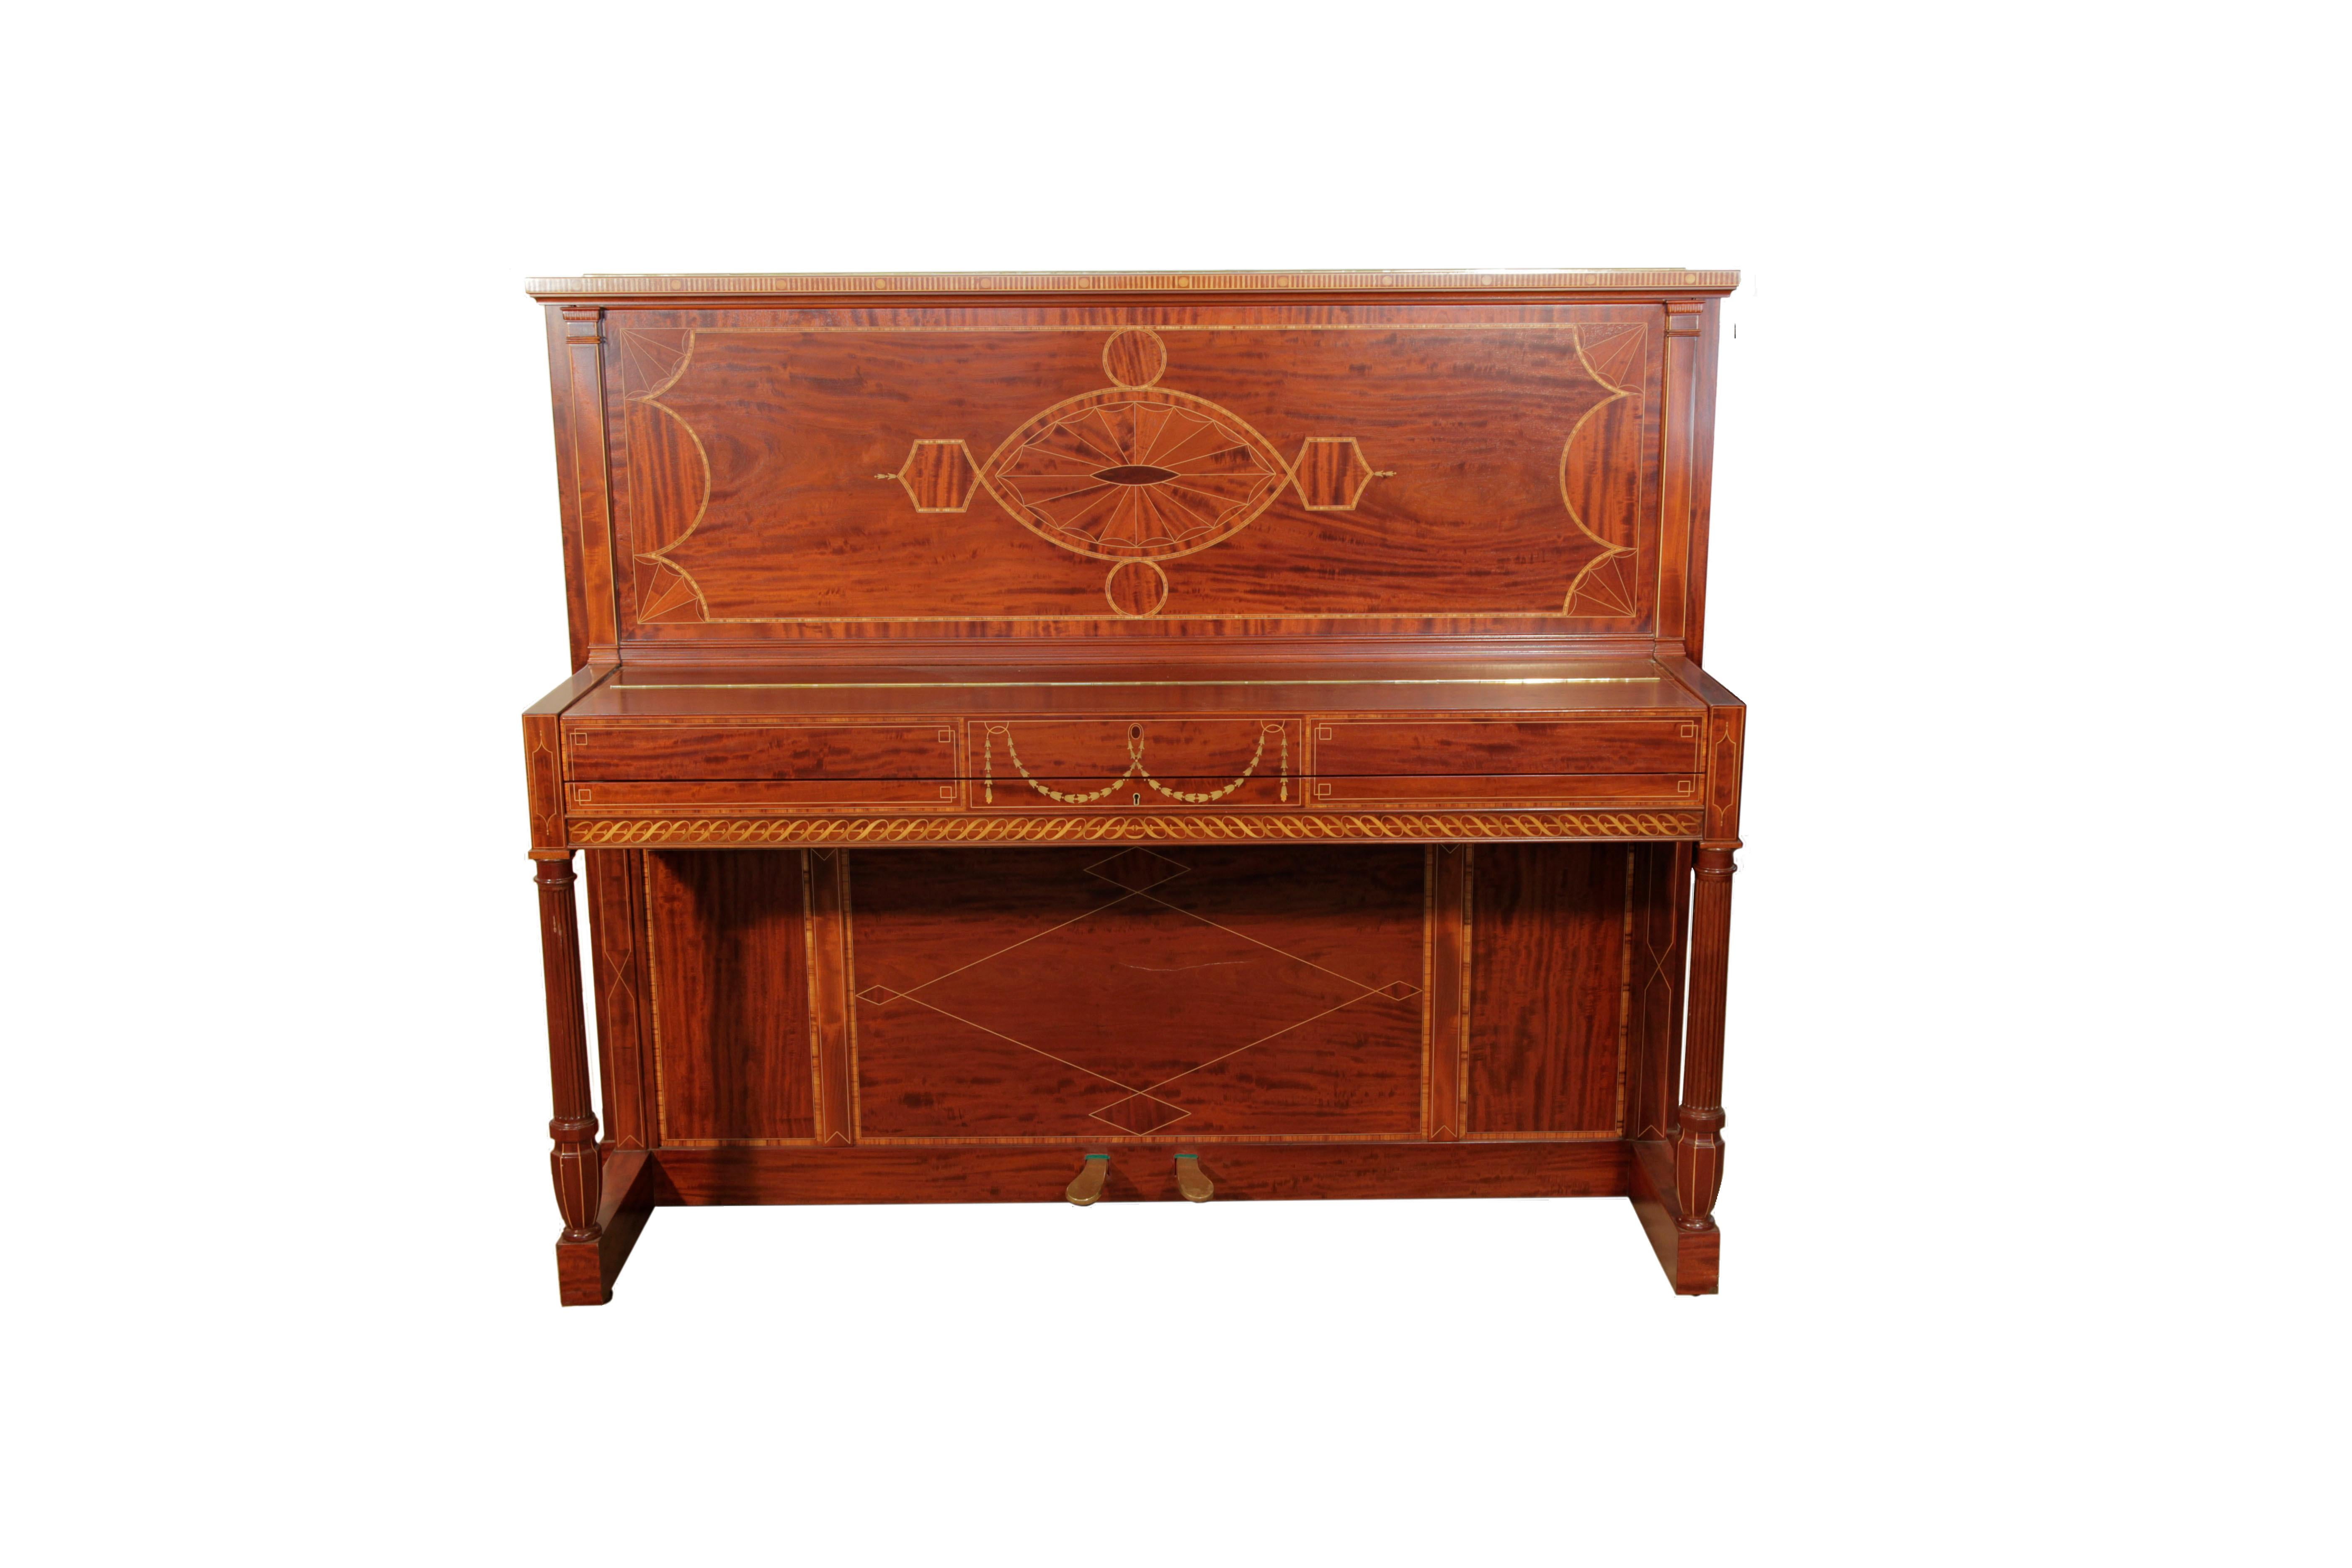 Un piano droit Weber de 1912 à vendre avec un coffret en acajou figuré. Le piano a des pieds cannelés de style dorique et un piédestal en forme d'urne.
L'ensemble du meuble est marqueté dans une variété de bois avec des motifs néoclassiques